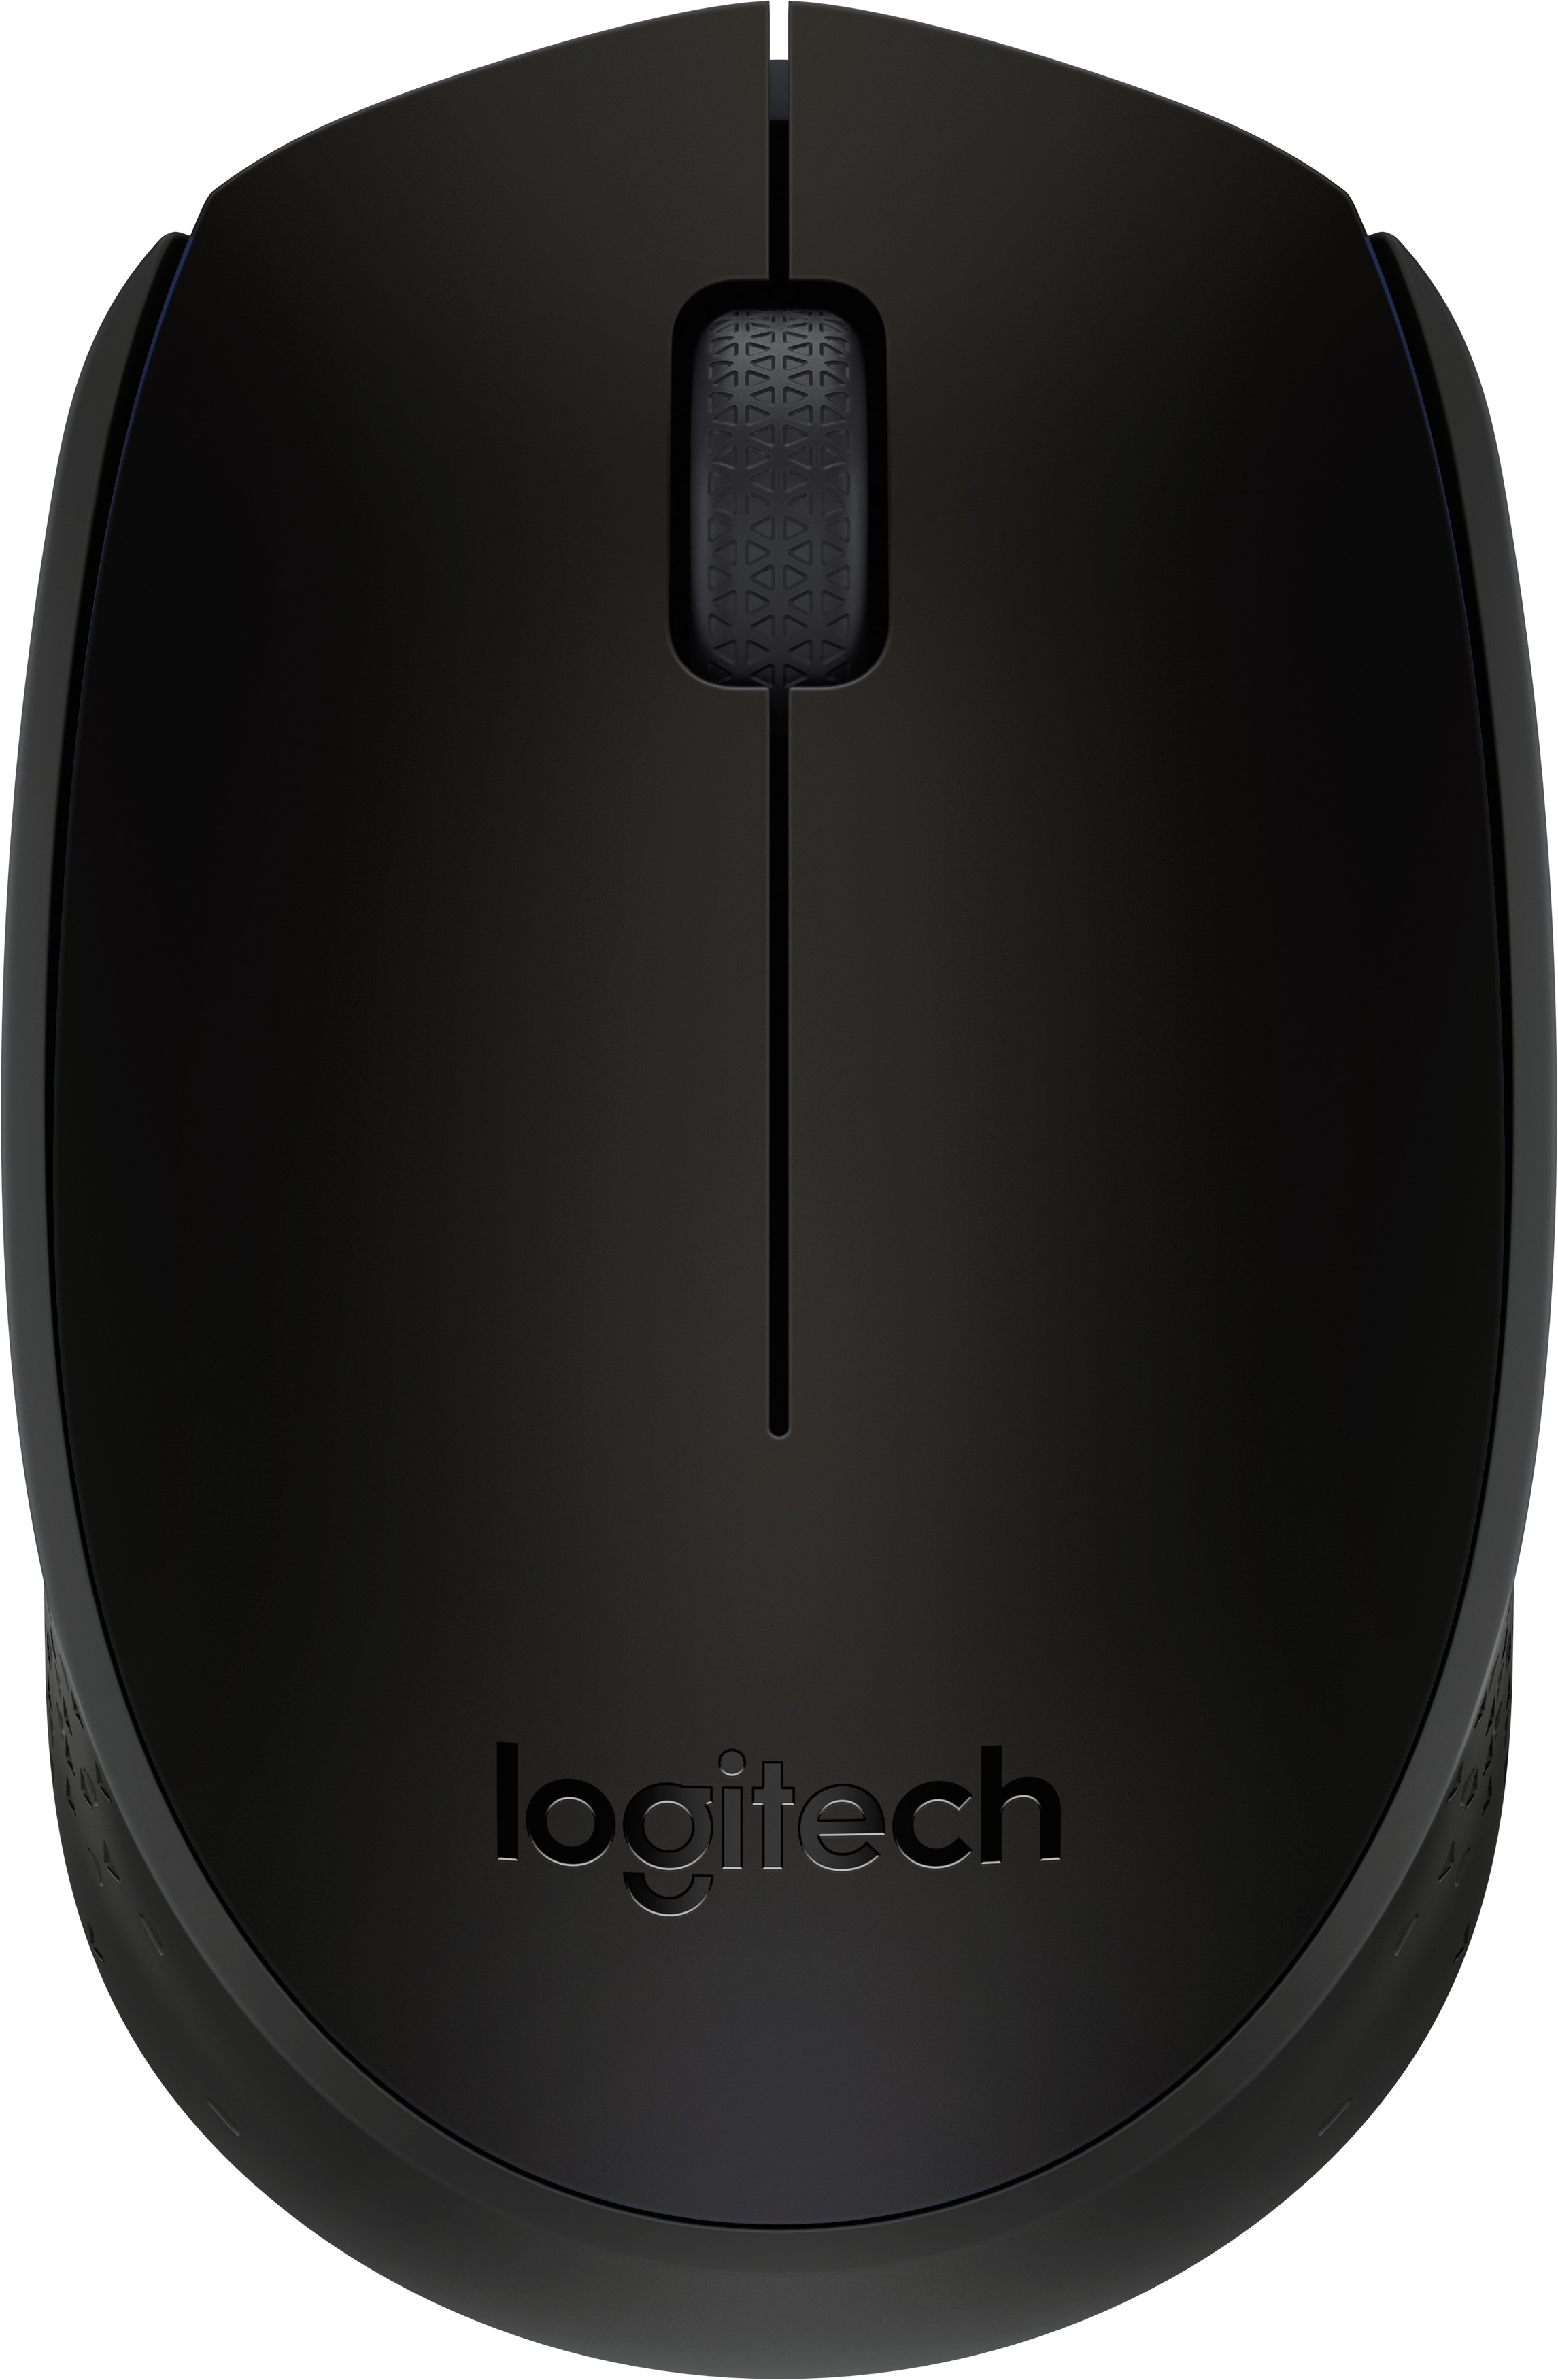 Logitech Maus B170, Wireless, schwarz Optisch, 1000 dpi, 3 Tasten, Business